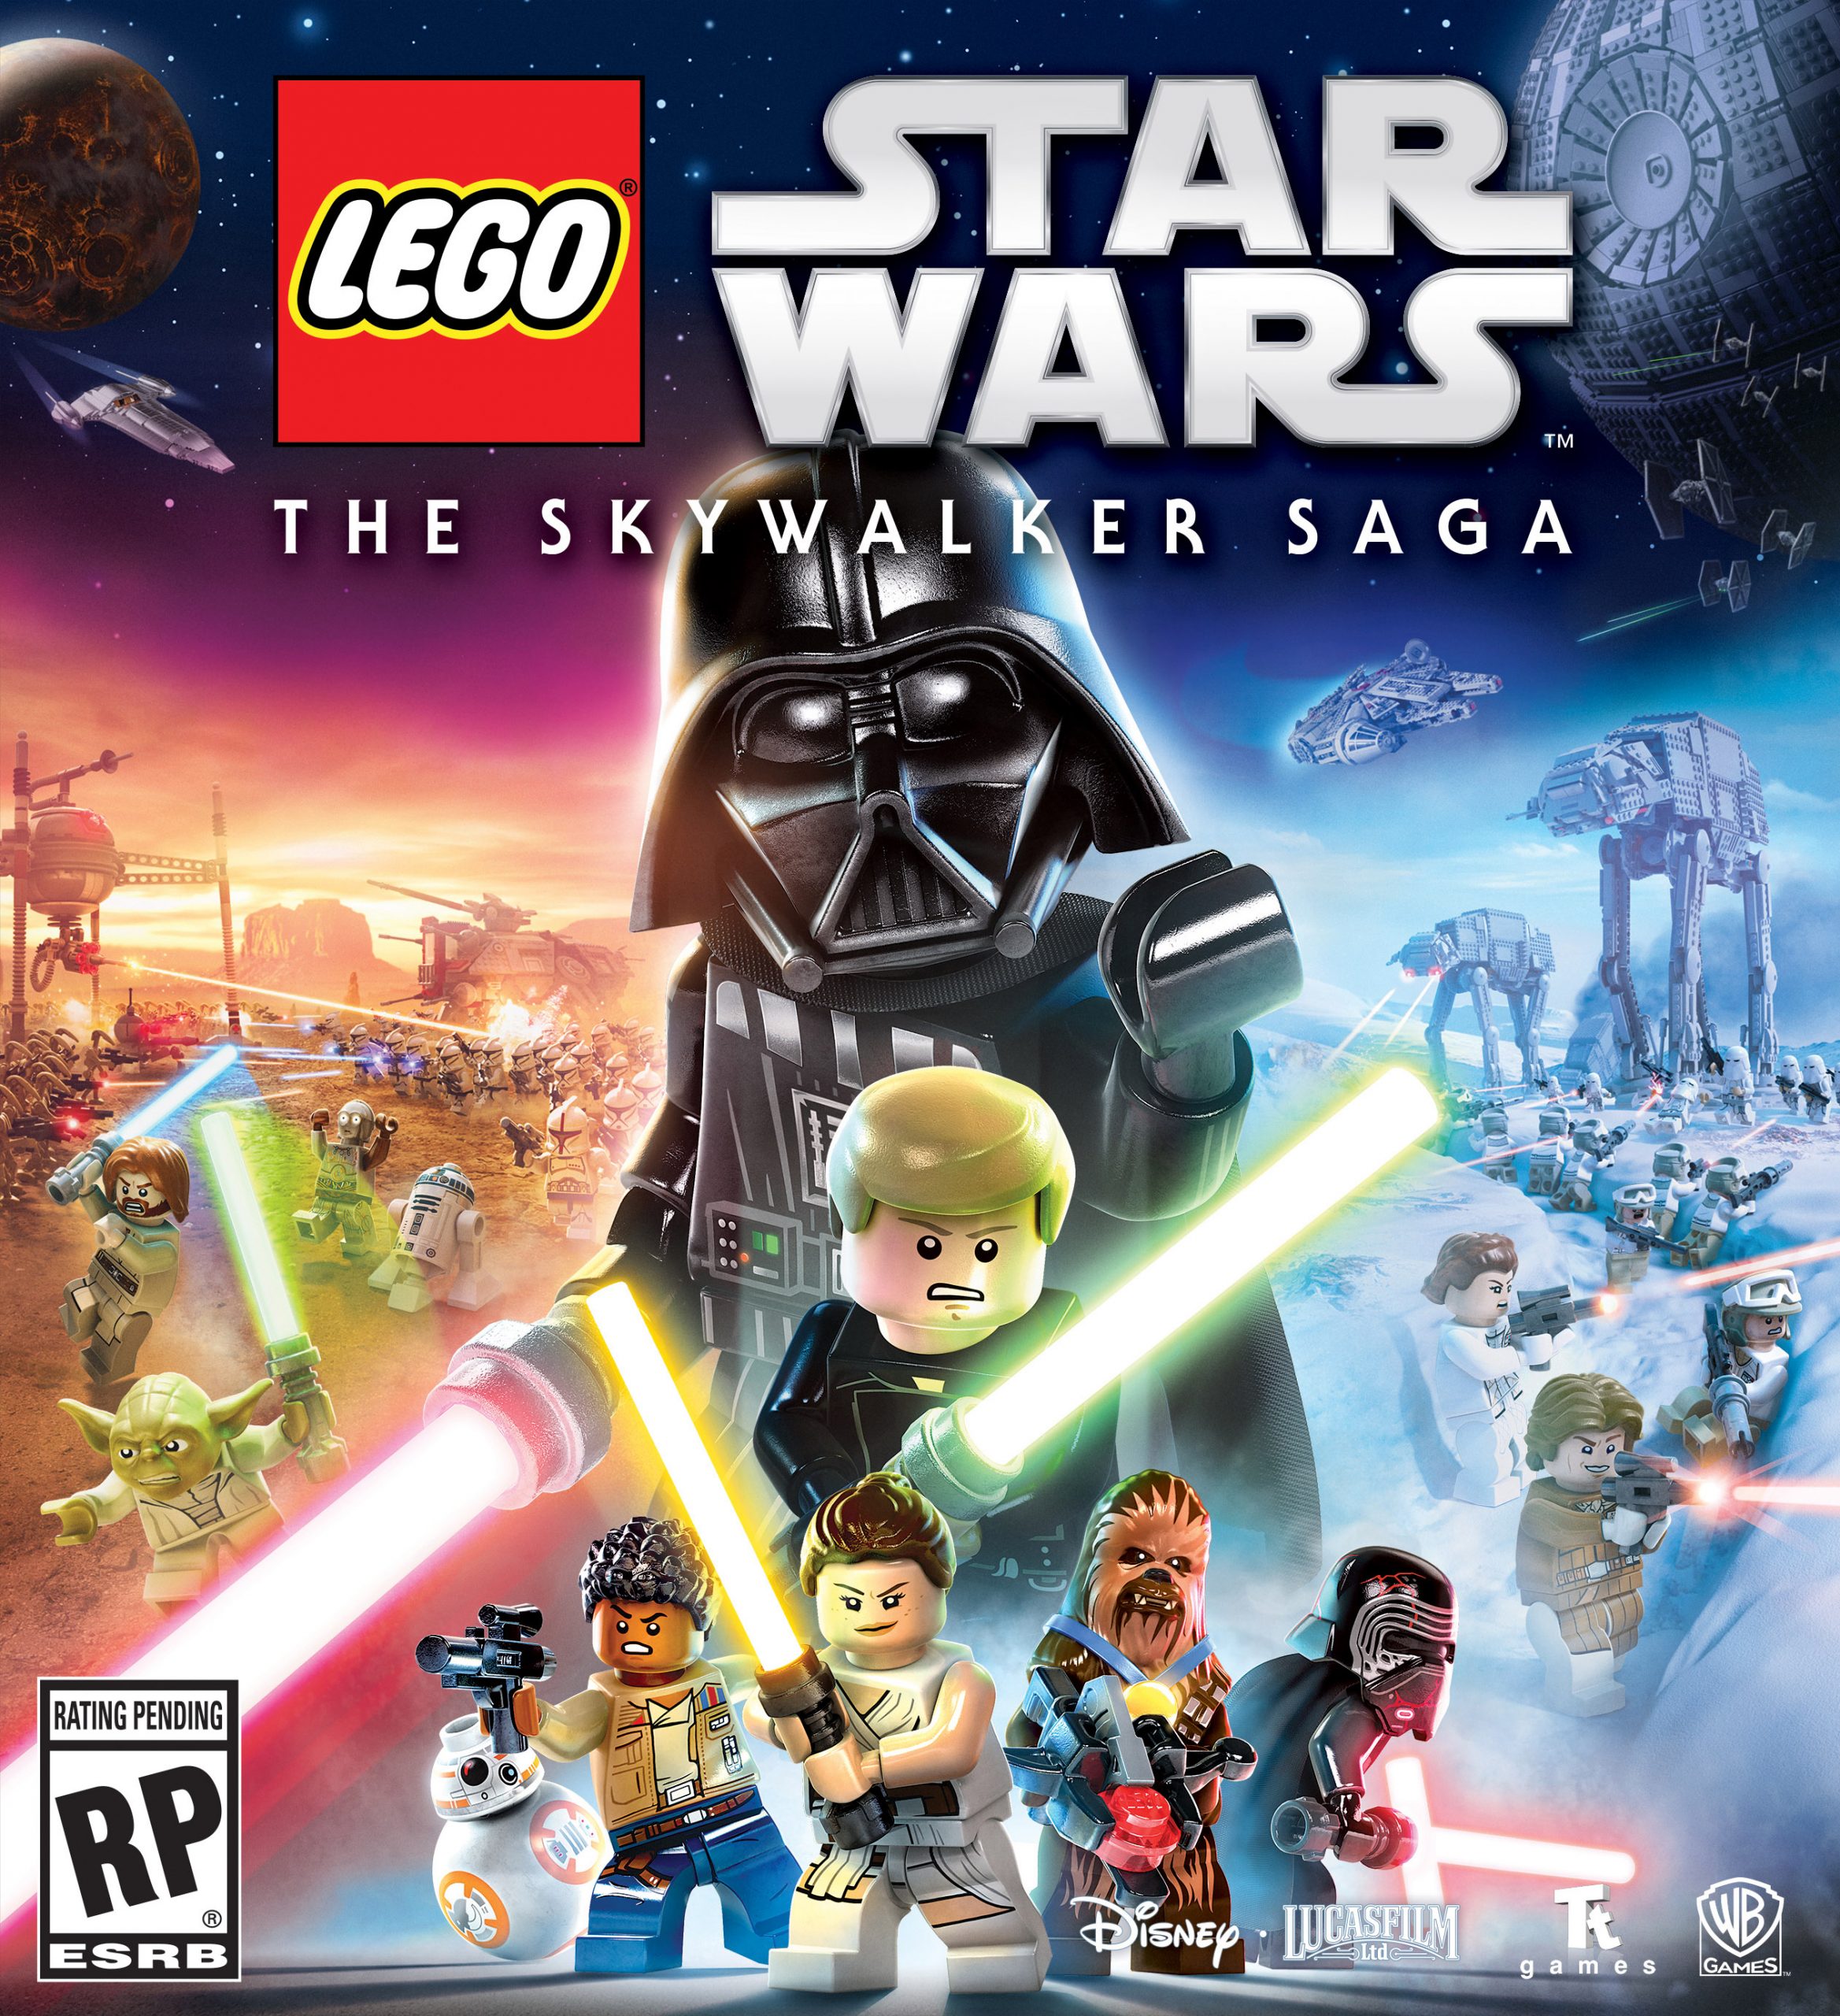 LEGO Star Wars: The Skywalker Saga ganha a arte da capa